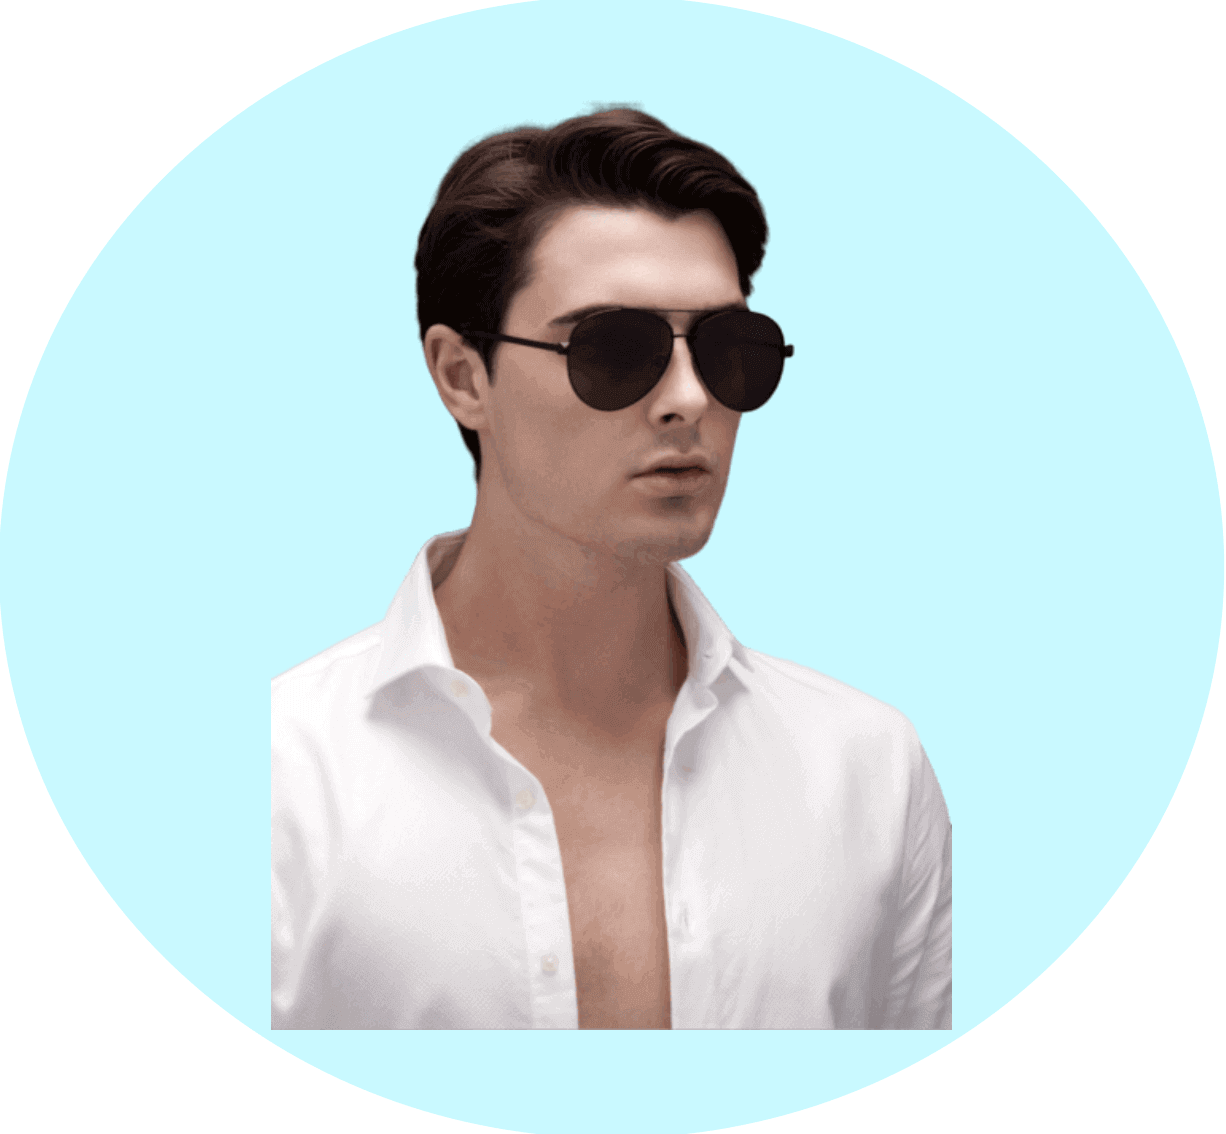 Custom men's plastic sunglasses, custom plastic sunglasses in bulk, custom sunglasses with logo, cheap plastic sunglasses in bulk, custom made sunglasses manufacturers, China sunglasses factory